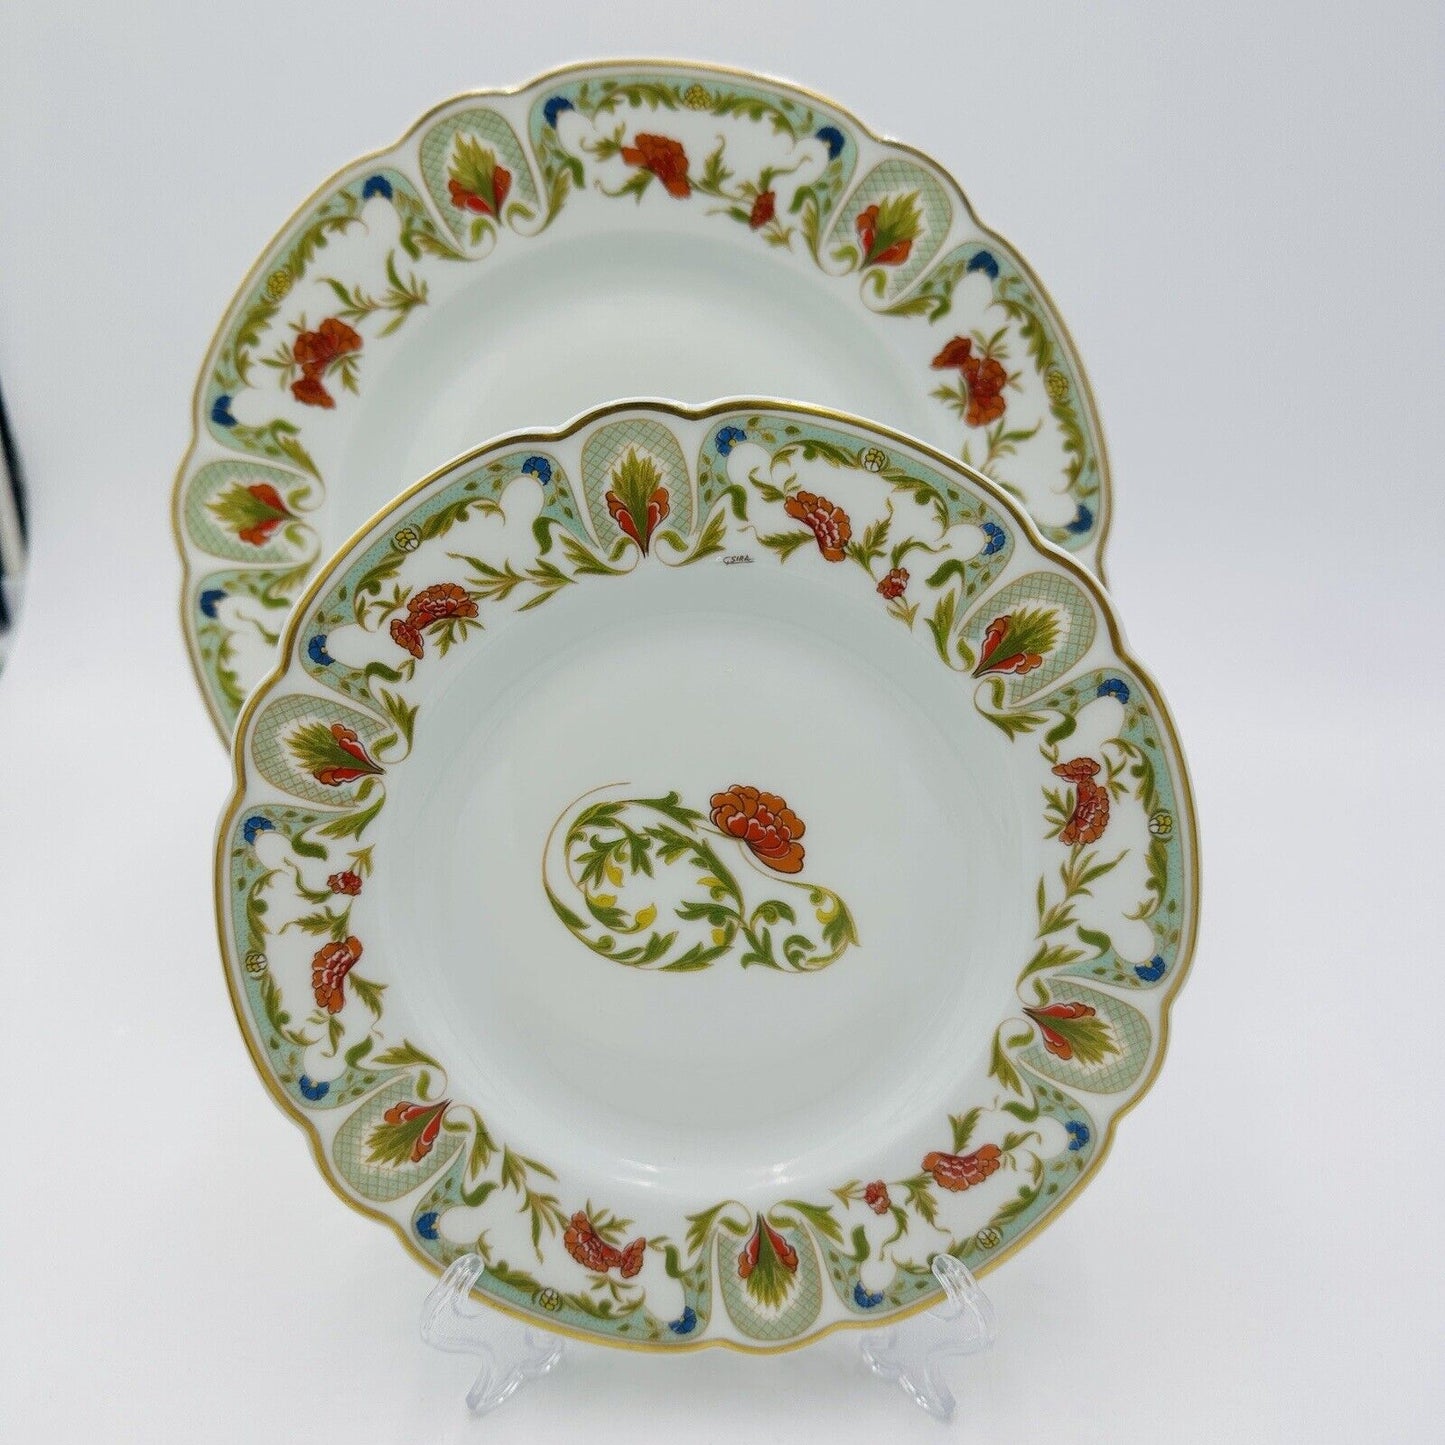 Vintage Charles Haviland Limoges France Porcelain Dinner and Salad Plates Set